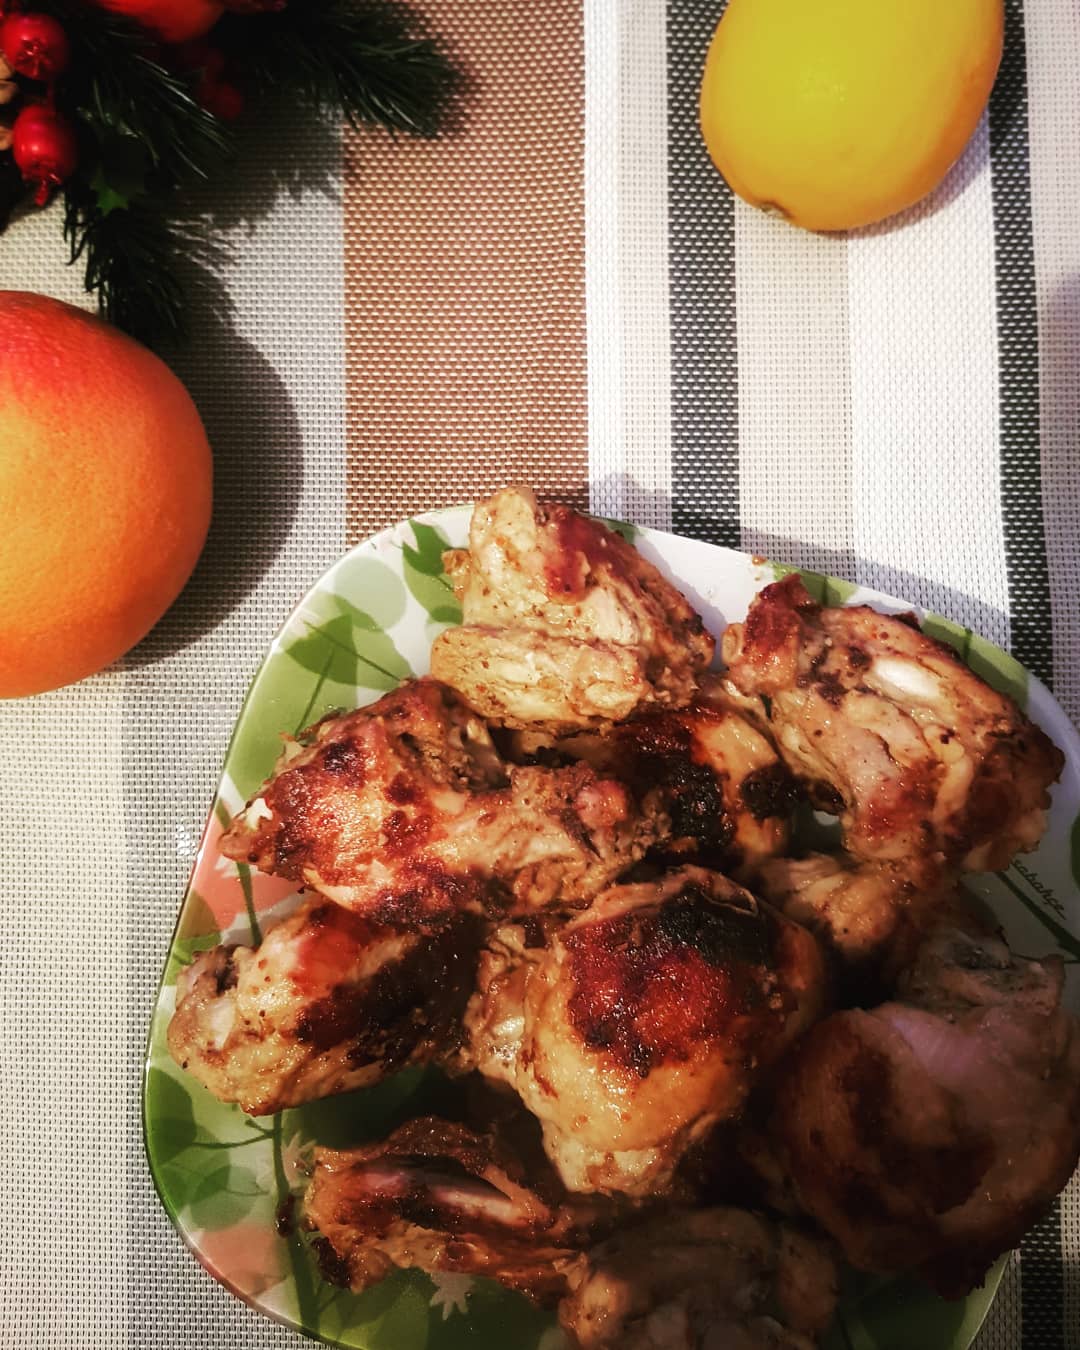 Готовим курицу на сковороде: 7 быстрых рецептов